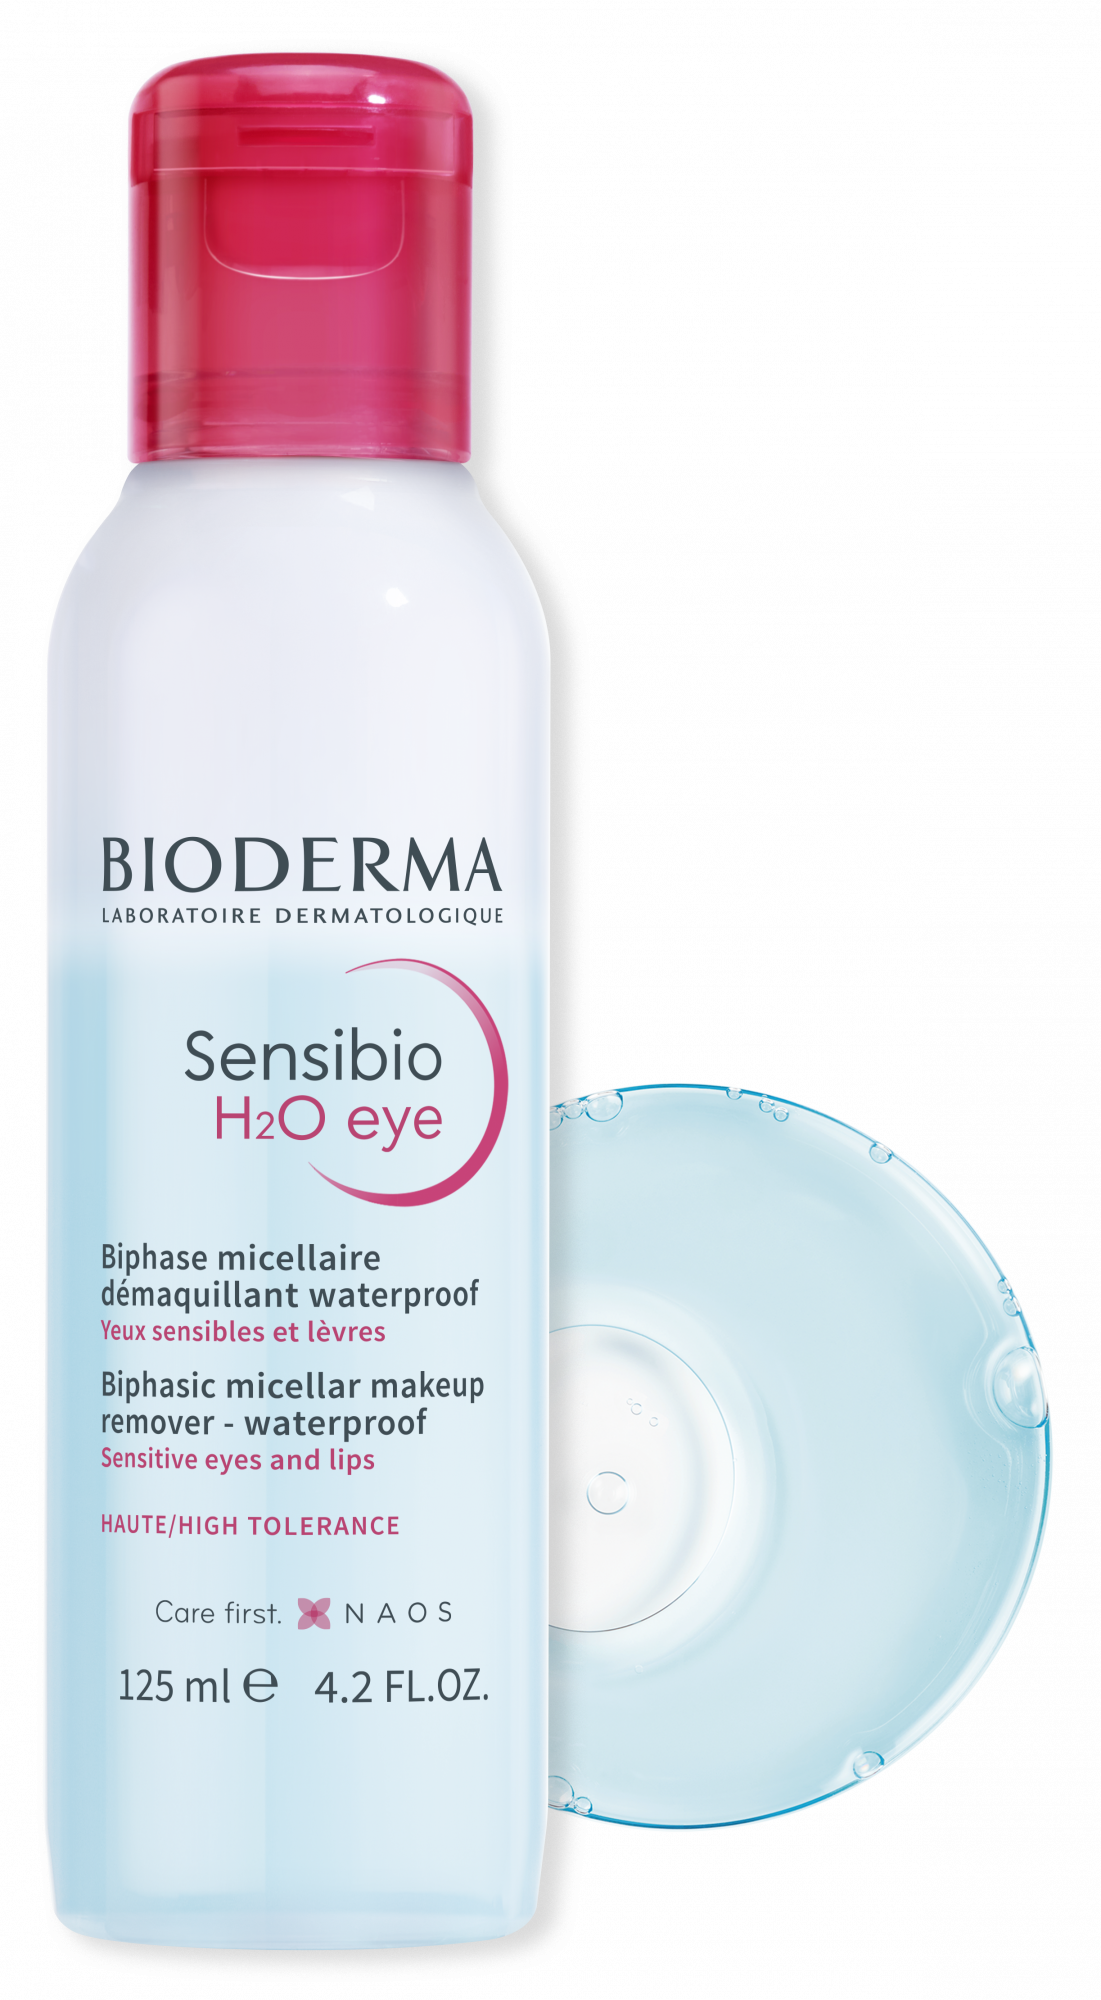 Bioderma lanza un agua micelar bifásica para los ojos que elimina el  maquillaje waterproof sin frotar